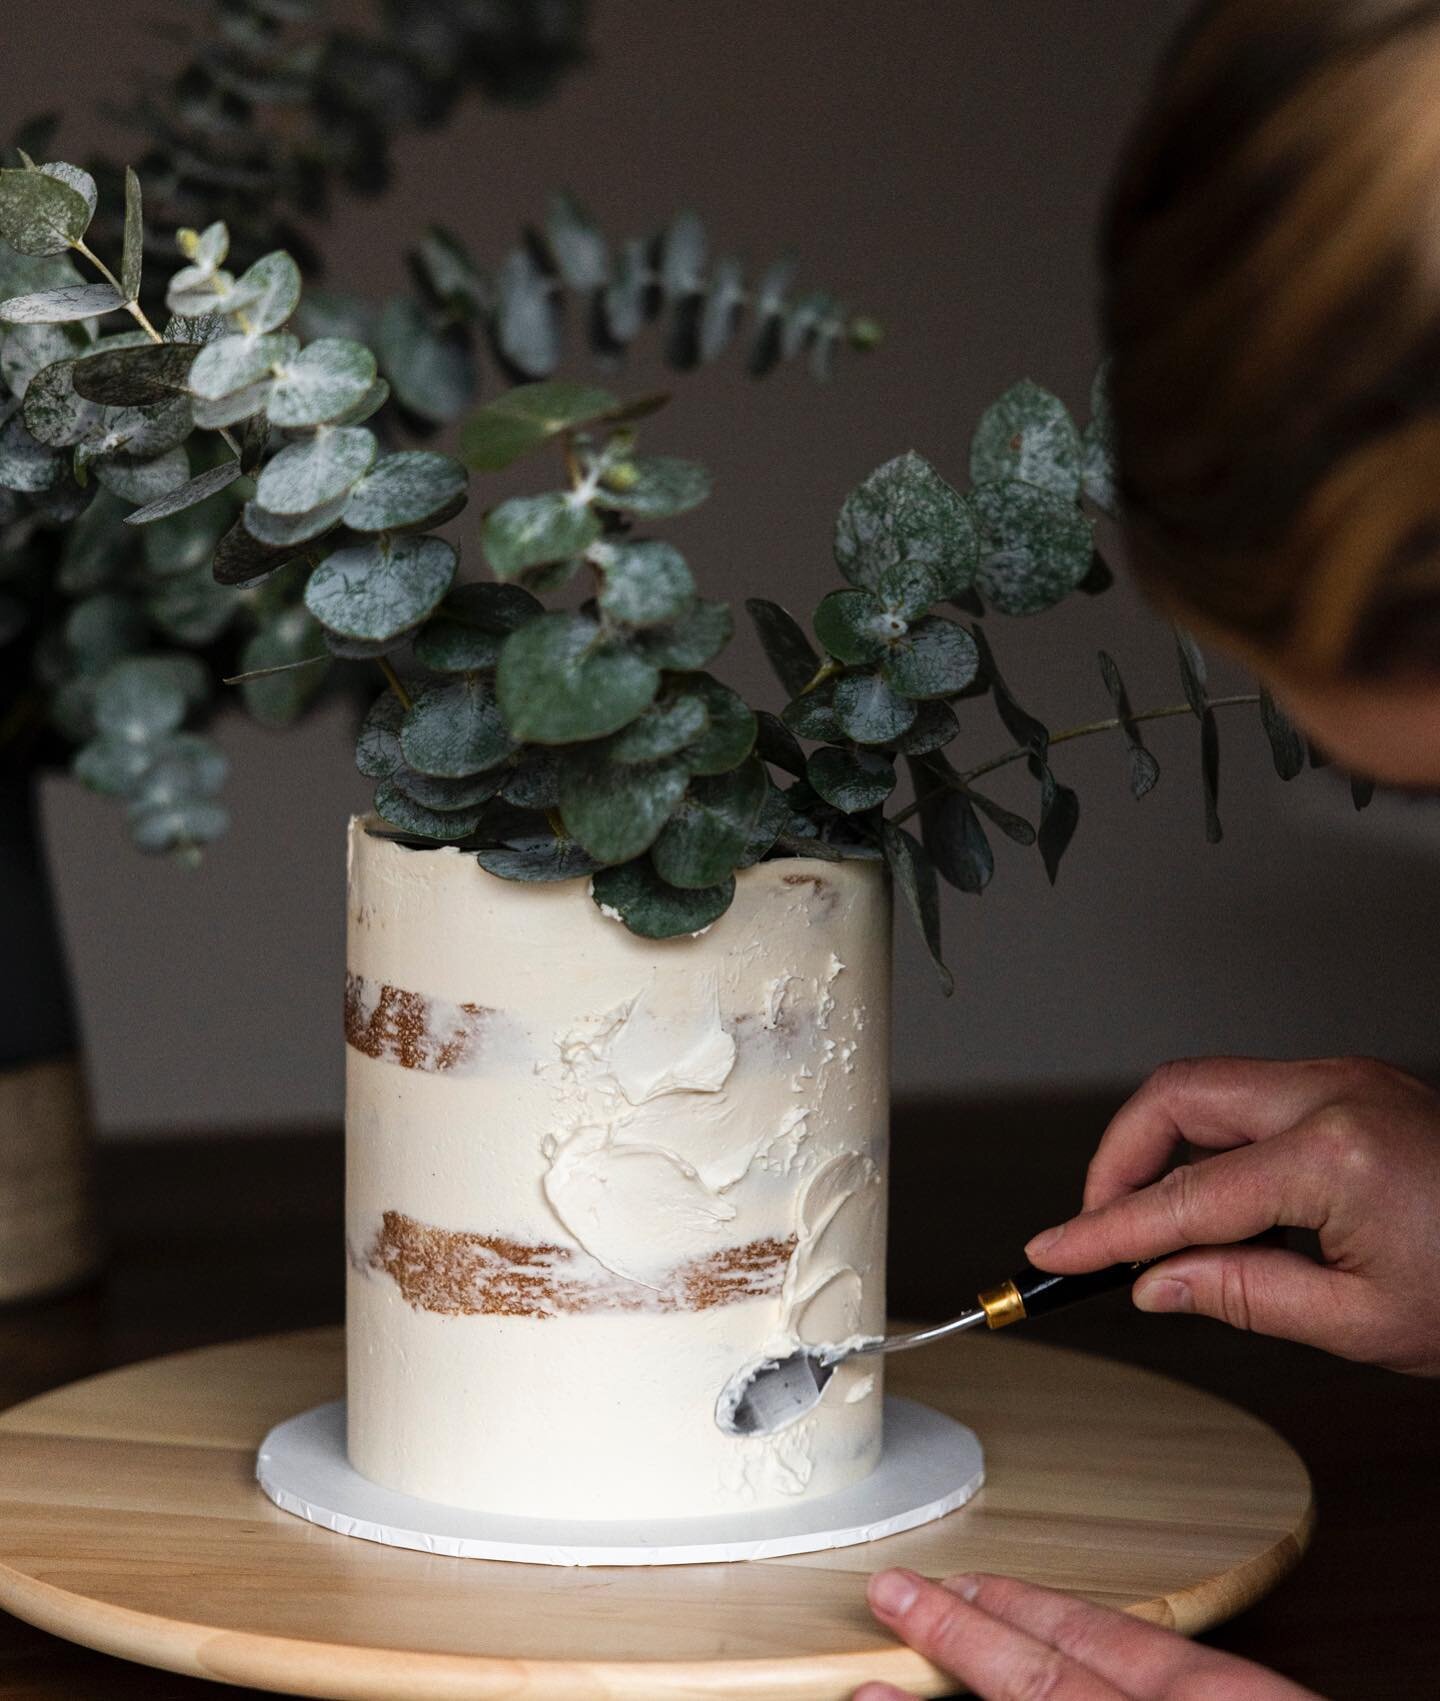 🍃🍃

#pastrychef #cakeartist #barossavalley #adelaidecakes #cakedesign #nakedcake #cake #cakeart #cakestyle #weddingcake #adelaideweddings #southaustralia